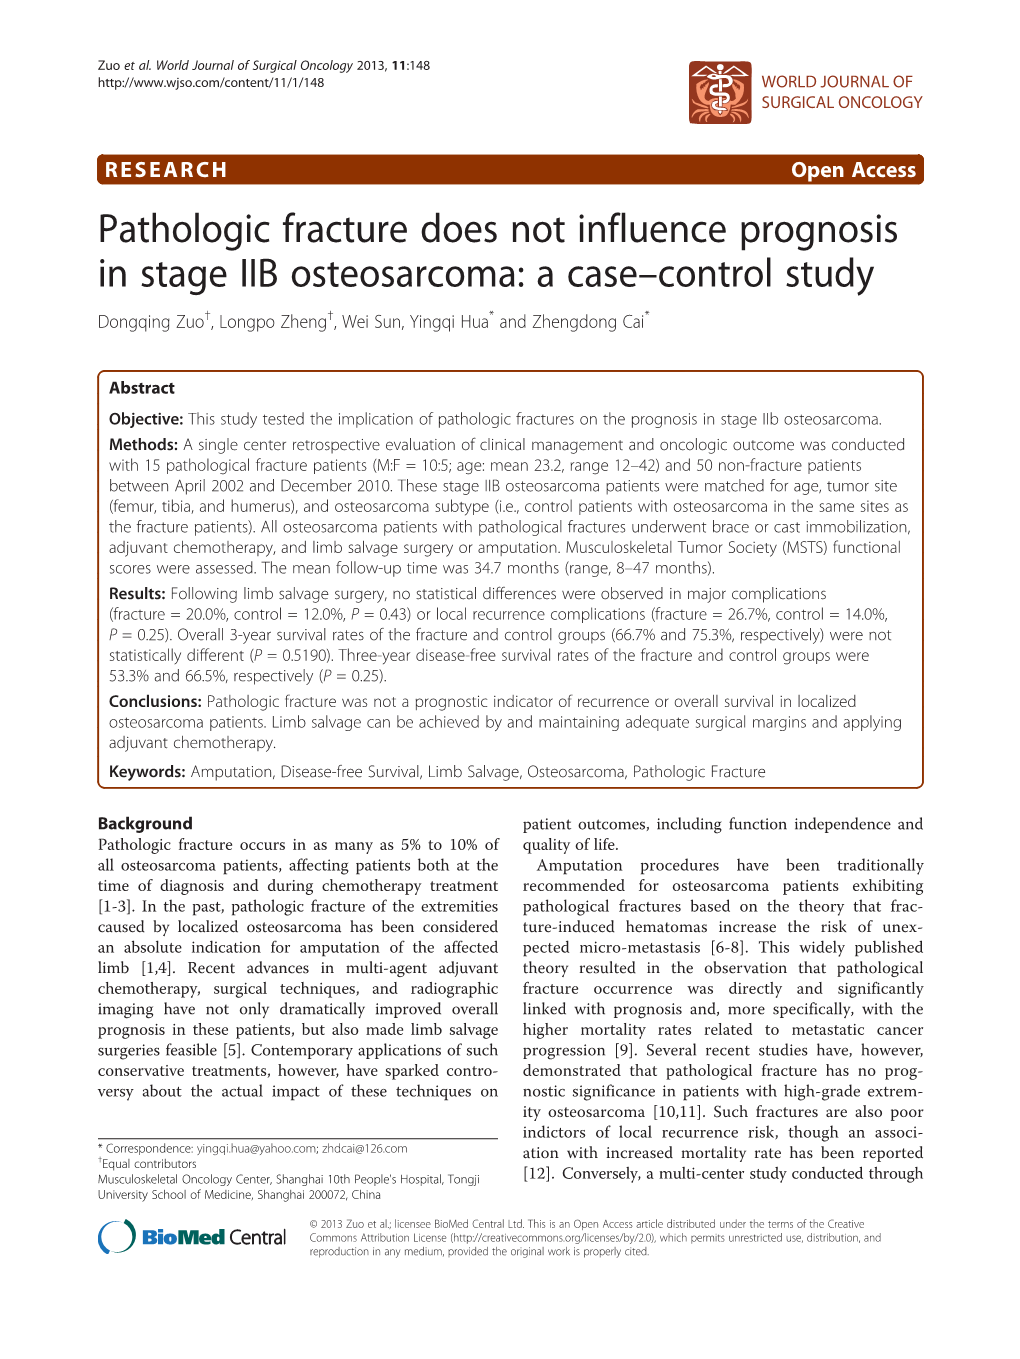 Pathologic Fracture Does Not Influence Prognosis in Stage IIB Osteosarcoma: a Case–Control Study Dongqing Zuo†, Longpo Zheng†, Wei Sun, Yingqi Hua* and Zhengdong Cai*